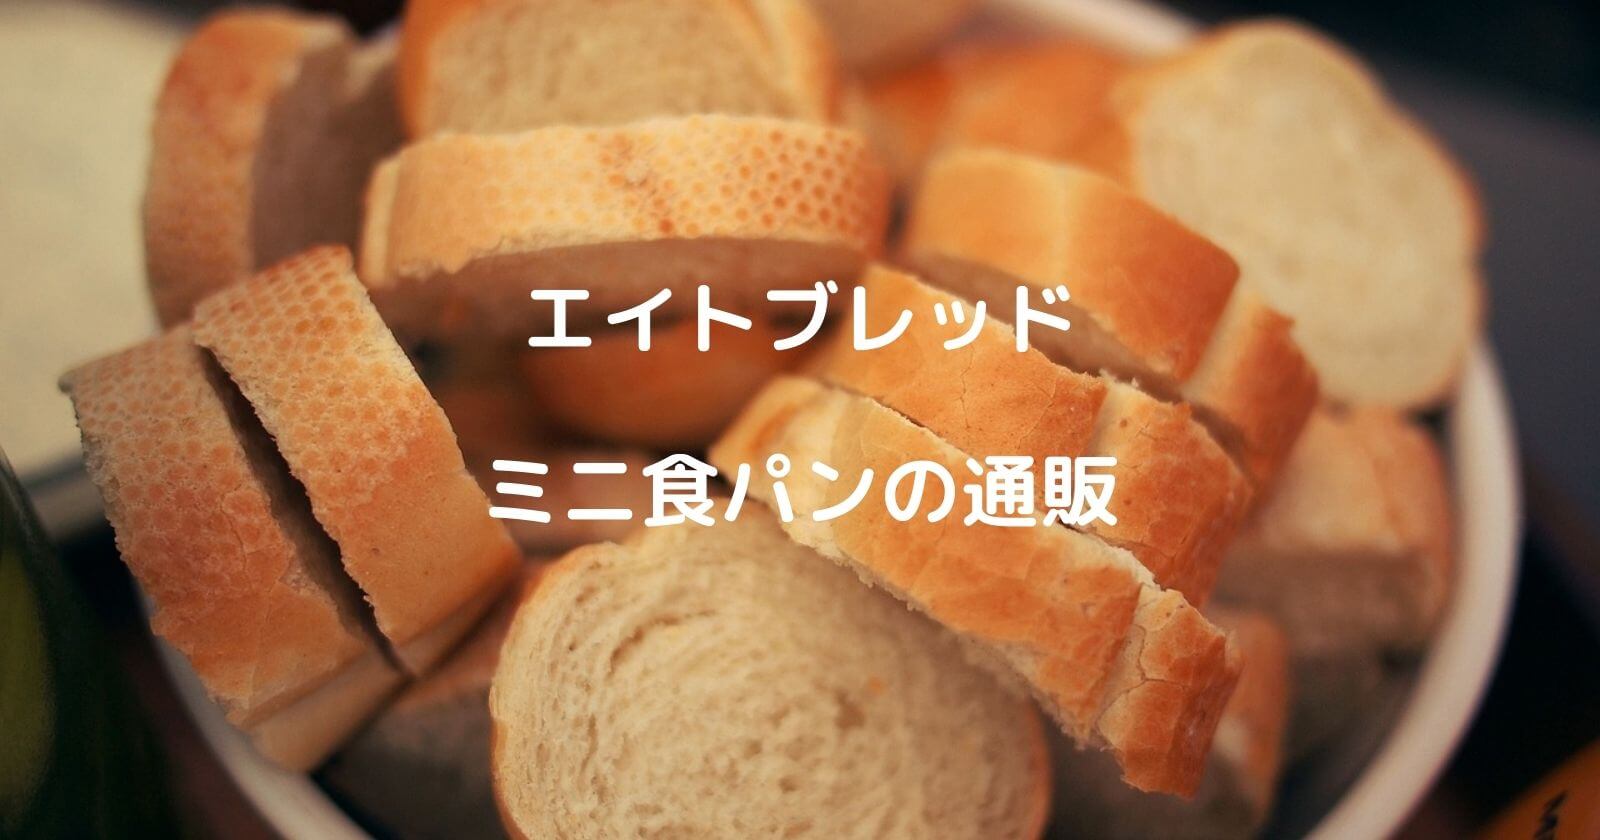 エイトブレッド「ミニ食パン」の通販